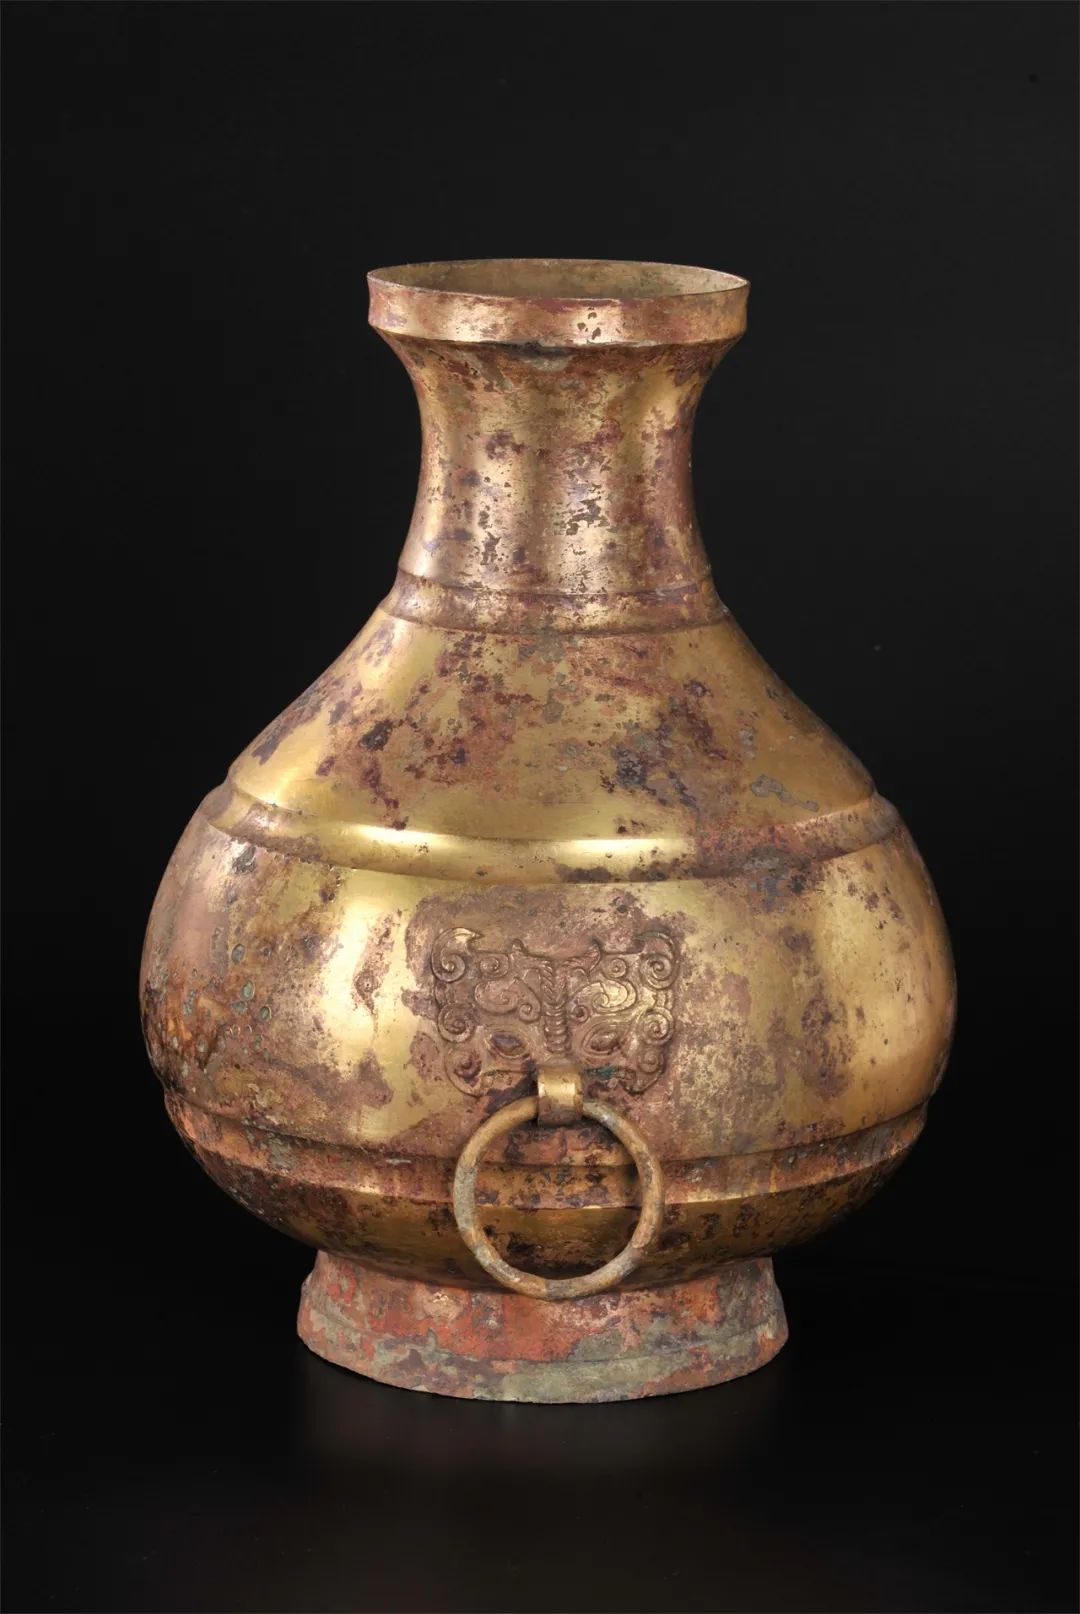 鎏金铜壶  西汉（公元前202年—公元8年）  1983年象岗南越王墓出土 西汉南越王博物馆藏